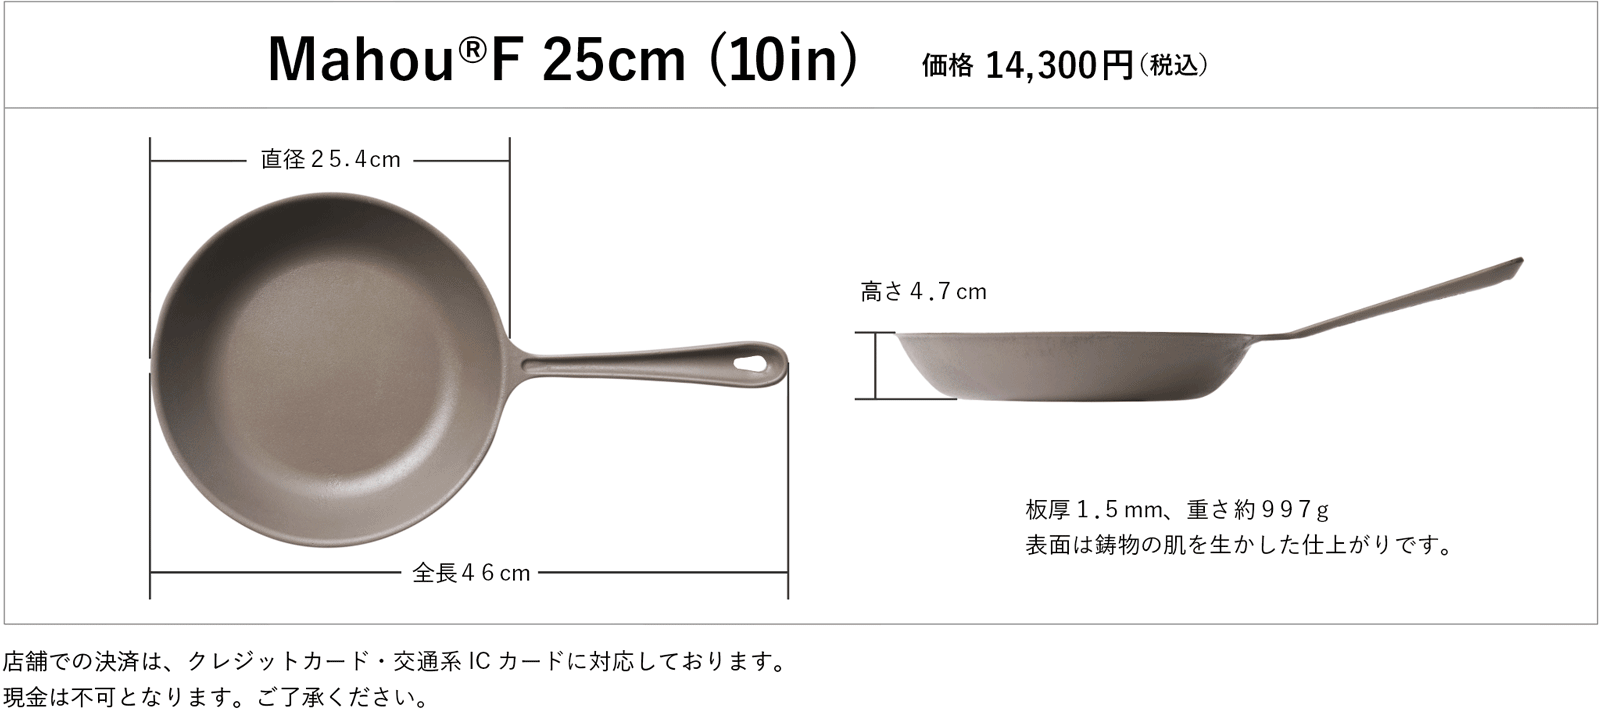 Mahou®F 25cm (10in)